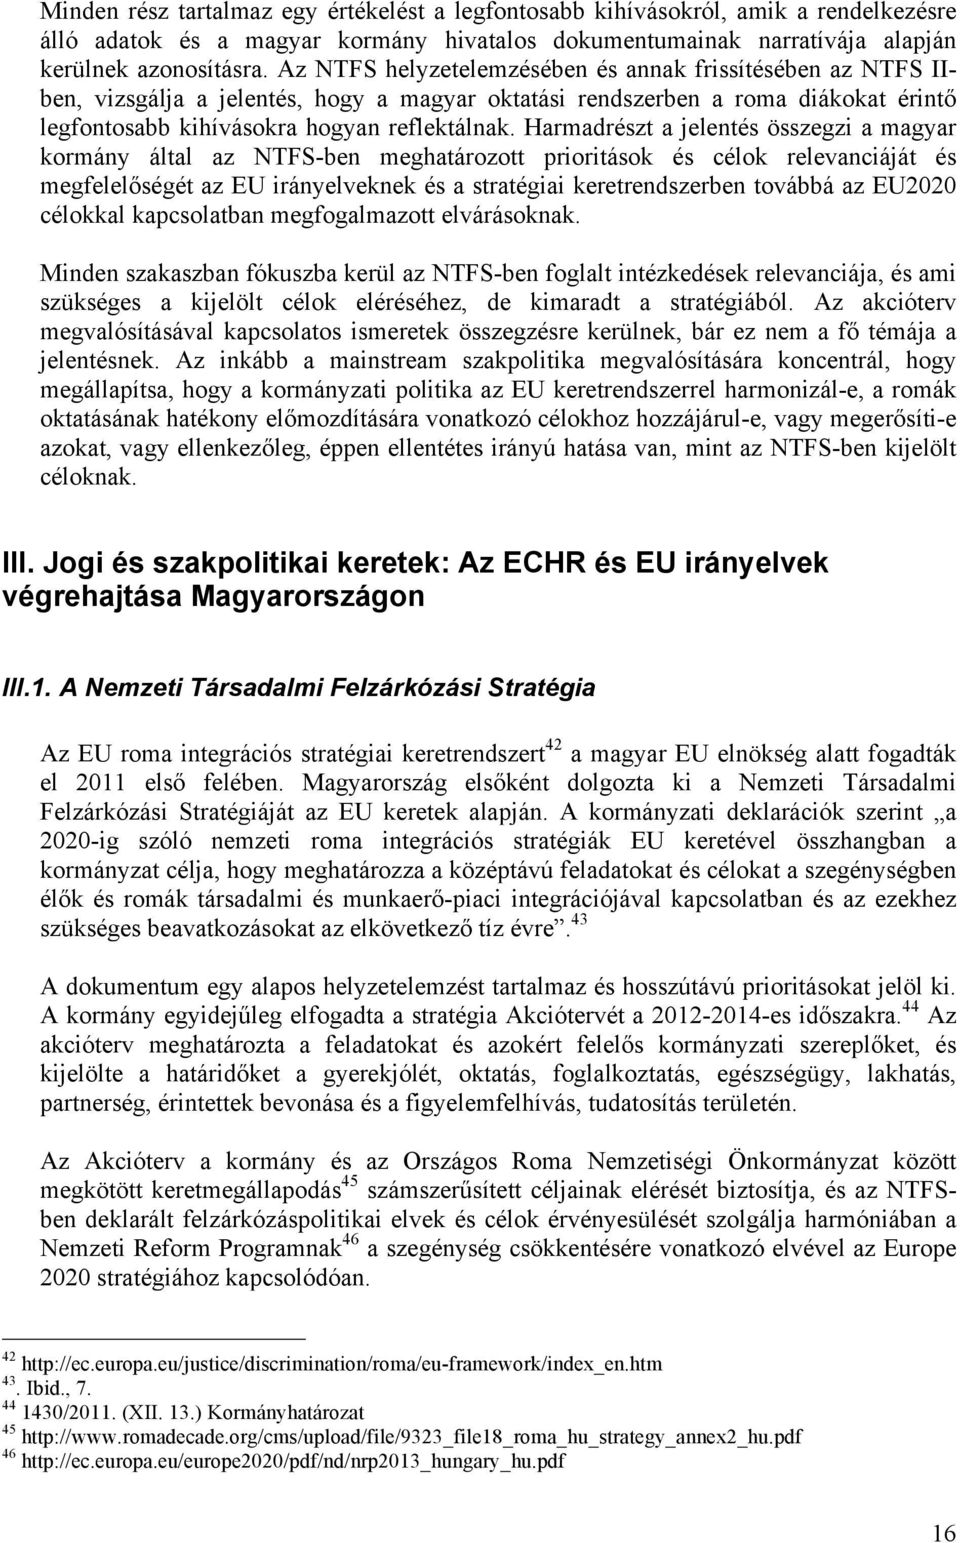 Harmadrészt a jelentés összegzi a magyar kormány által az NTFS-ben meghatározott prioritások és célok relevanciáját és megfelelőségét az EU irányelveknek és a stratégiai keretrendszerben továbbá az